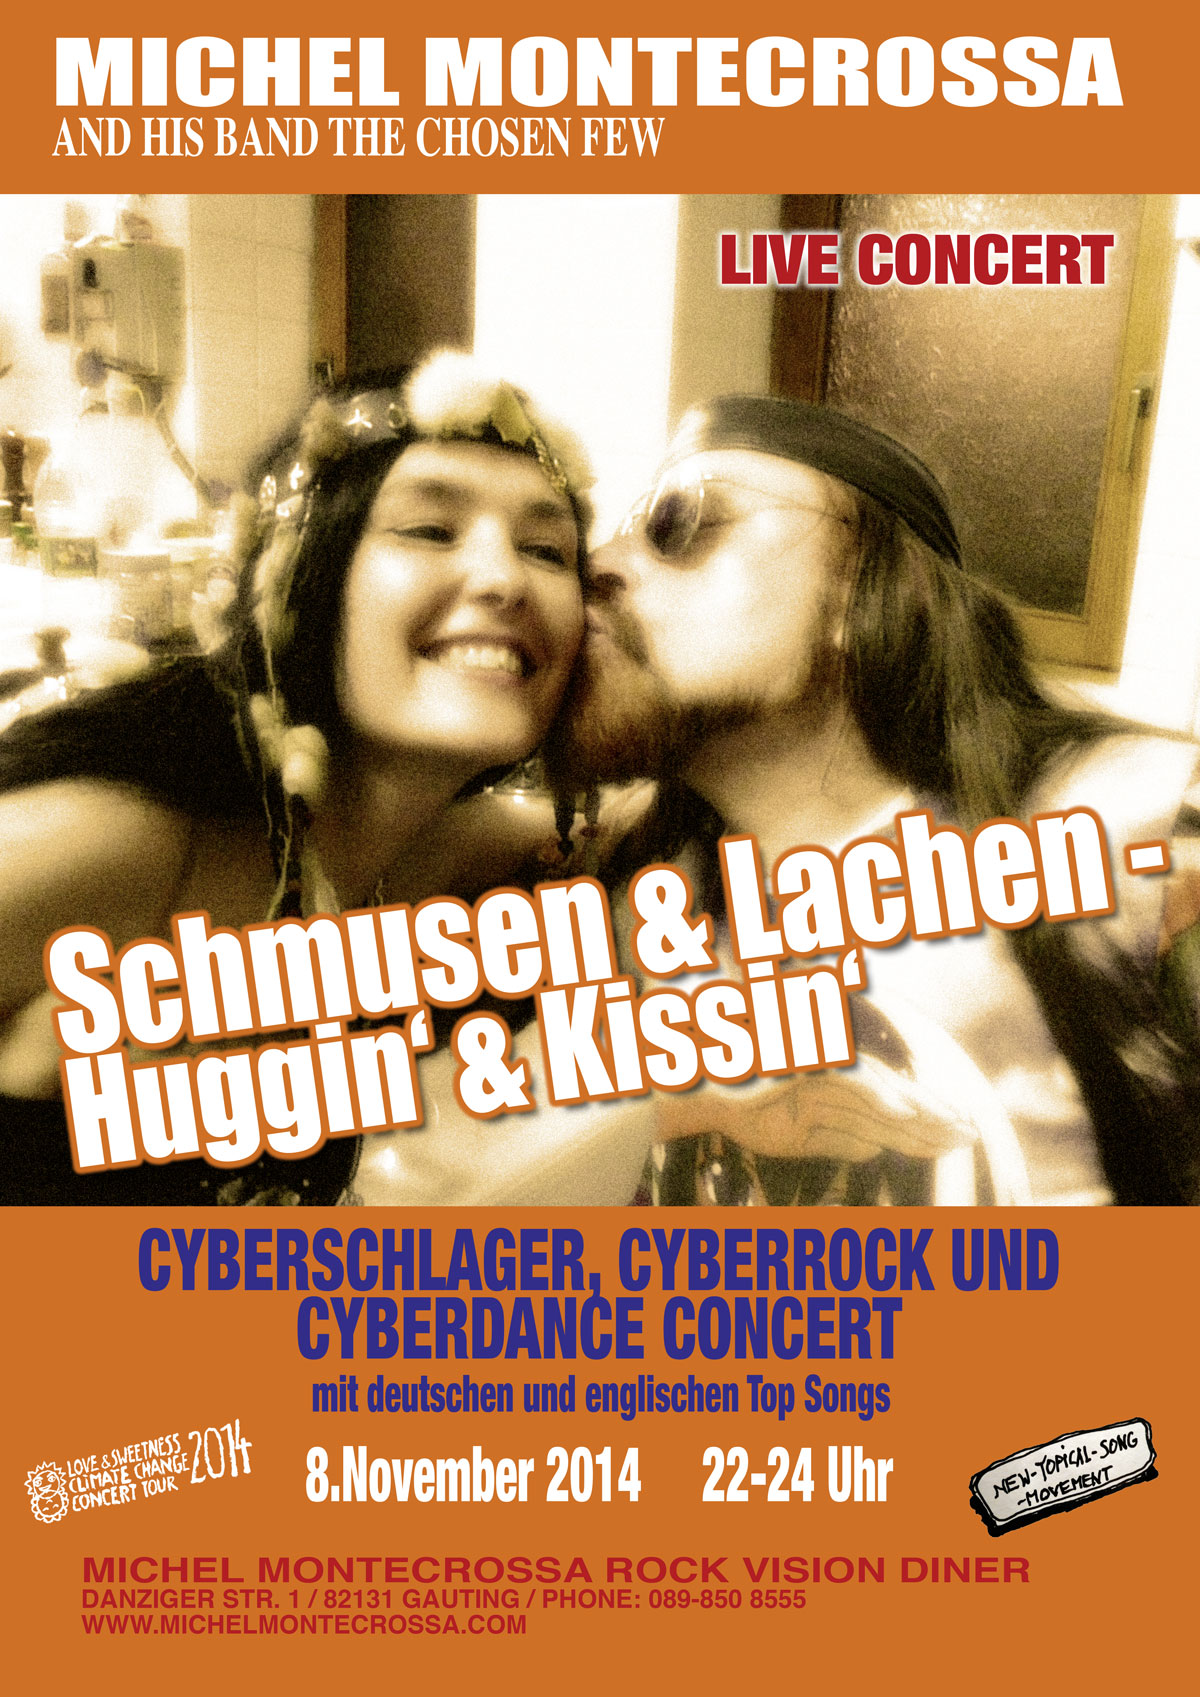 Schmusen & Lachen - Huggin' & Kissin'